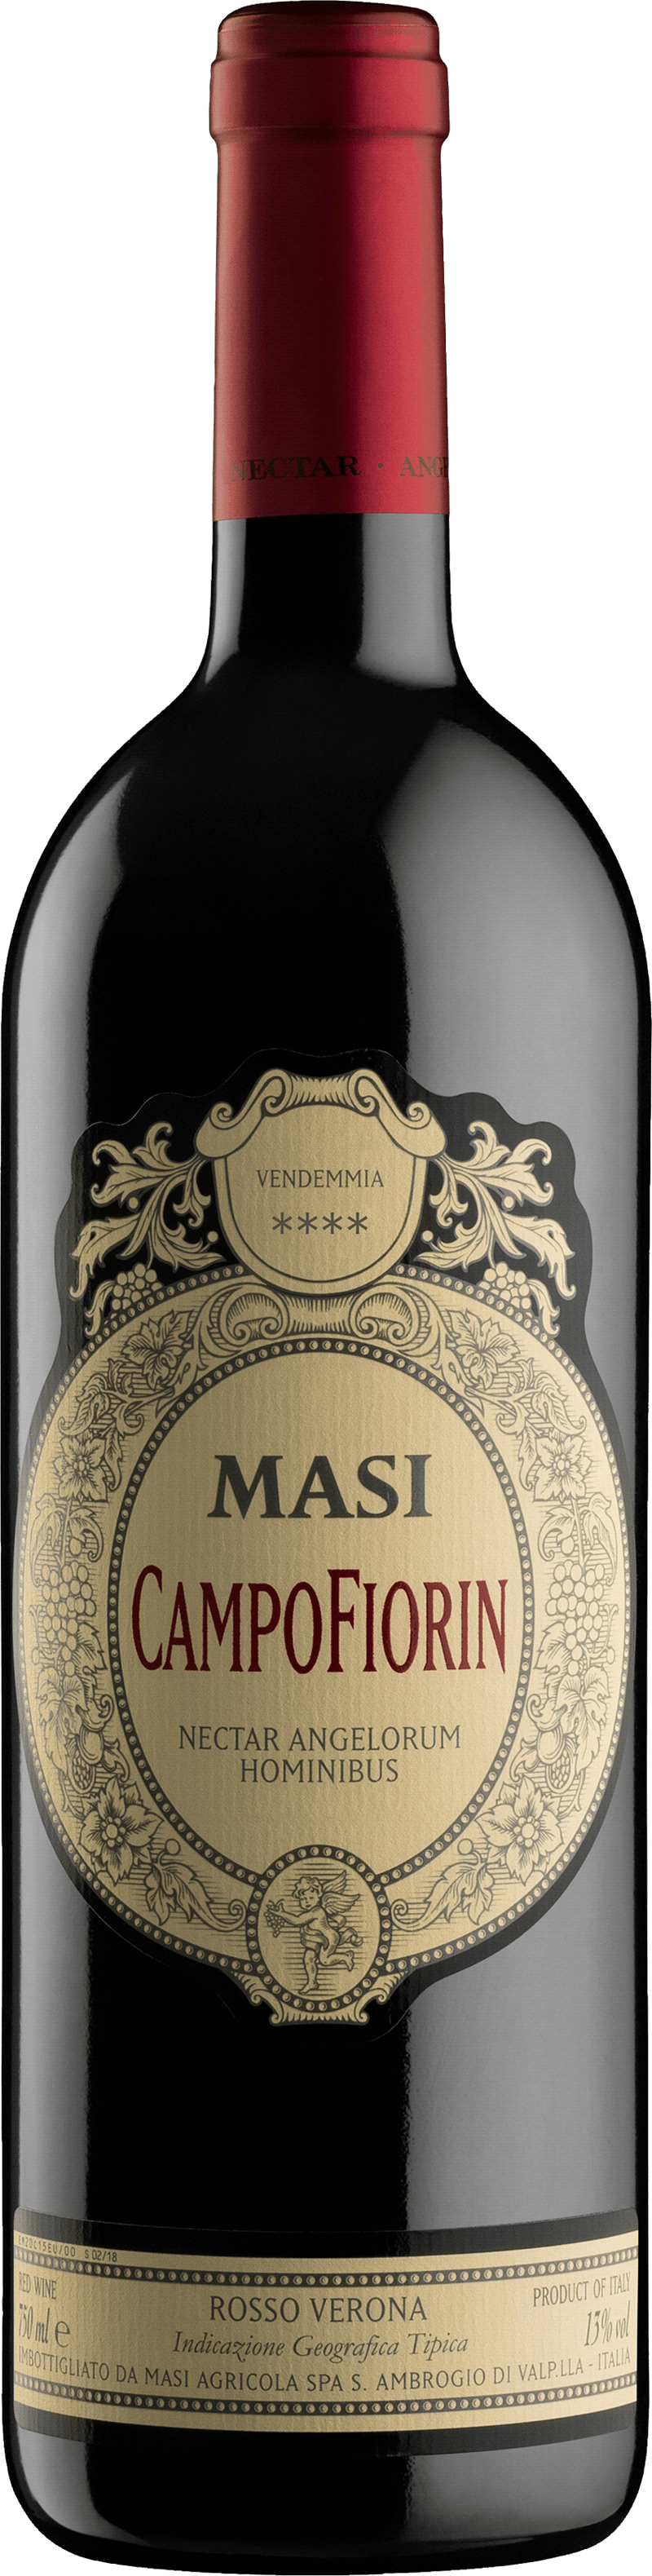 Masi Campofiorin 2017